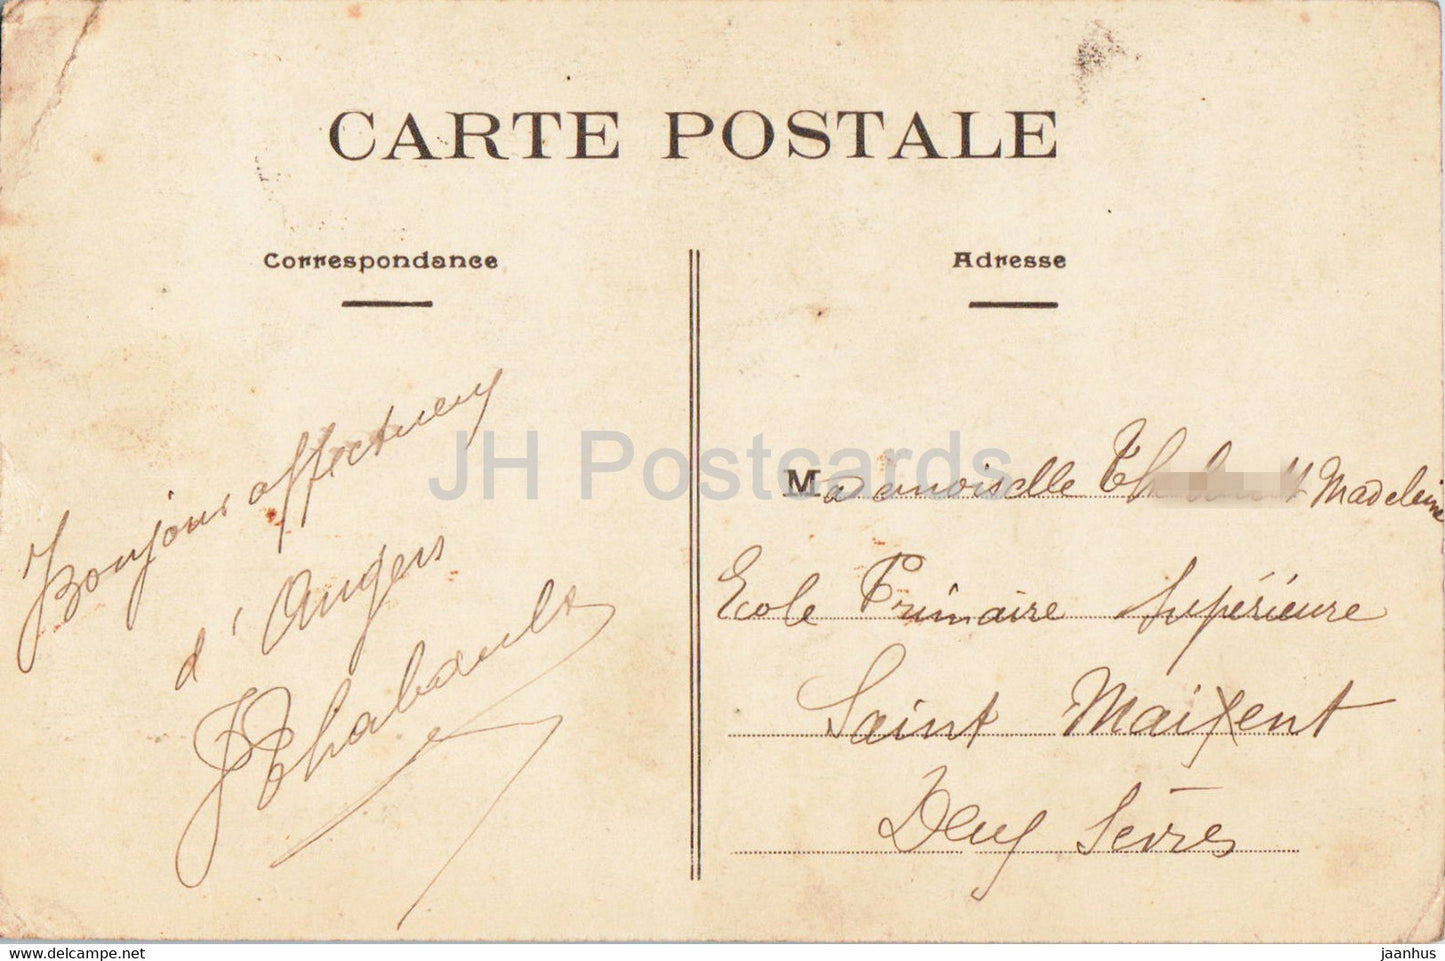 Angers - Musee - Galerie David - Museum - 44 - alte Postkarte - 1909 - Frankreich - gebraucht